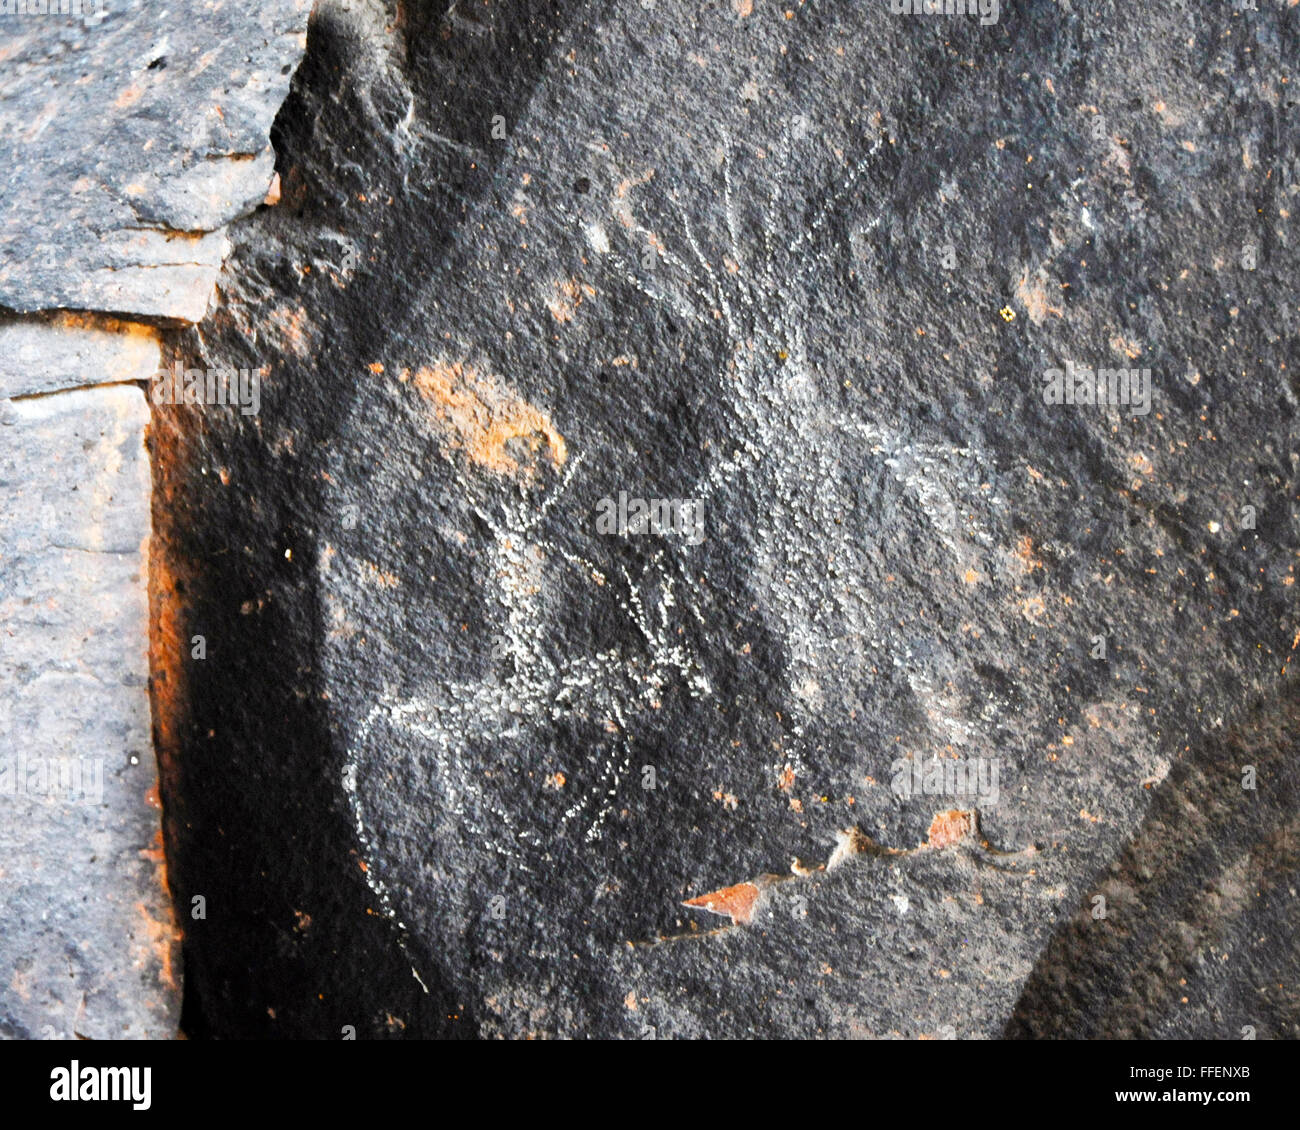 Indianischen Piktogrammen und Petroglyphen. Petroglyphen, Bilder gezeichnet oder gemalt auf einem Felsen, carving-Bilder, Petroforms Inukshu. Stockfoto